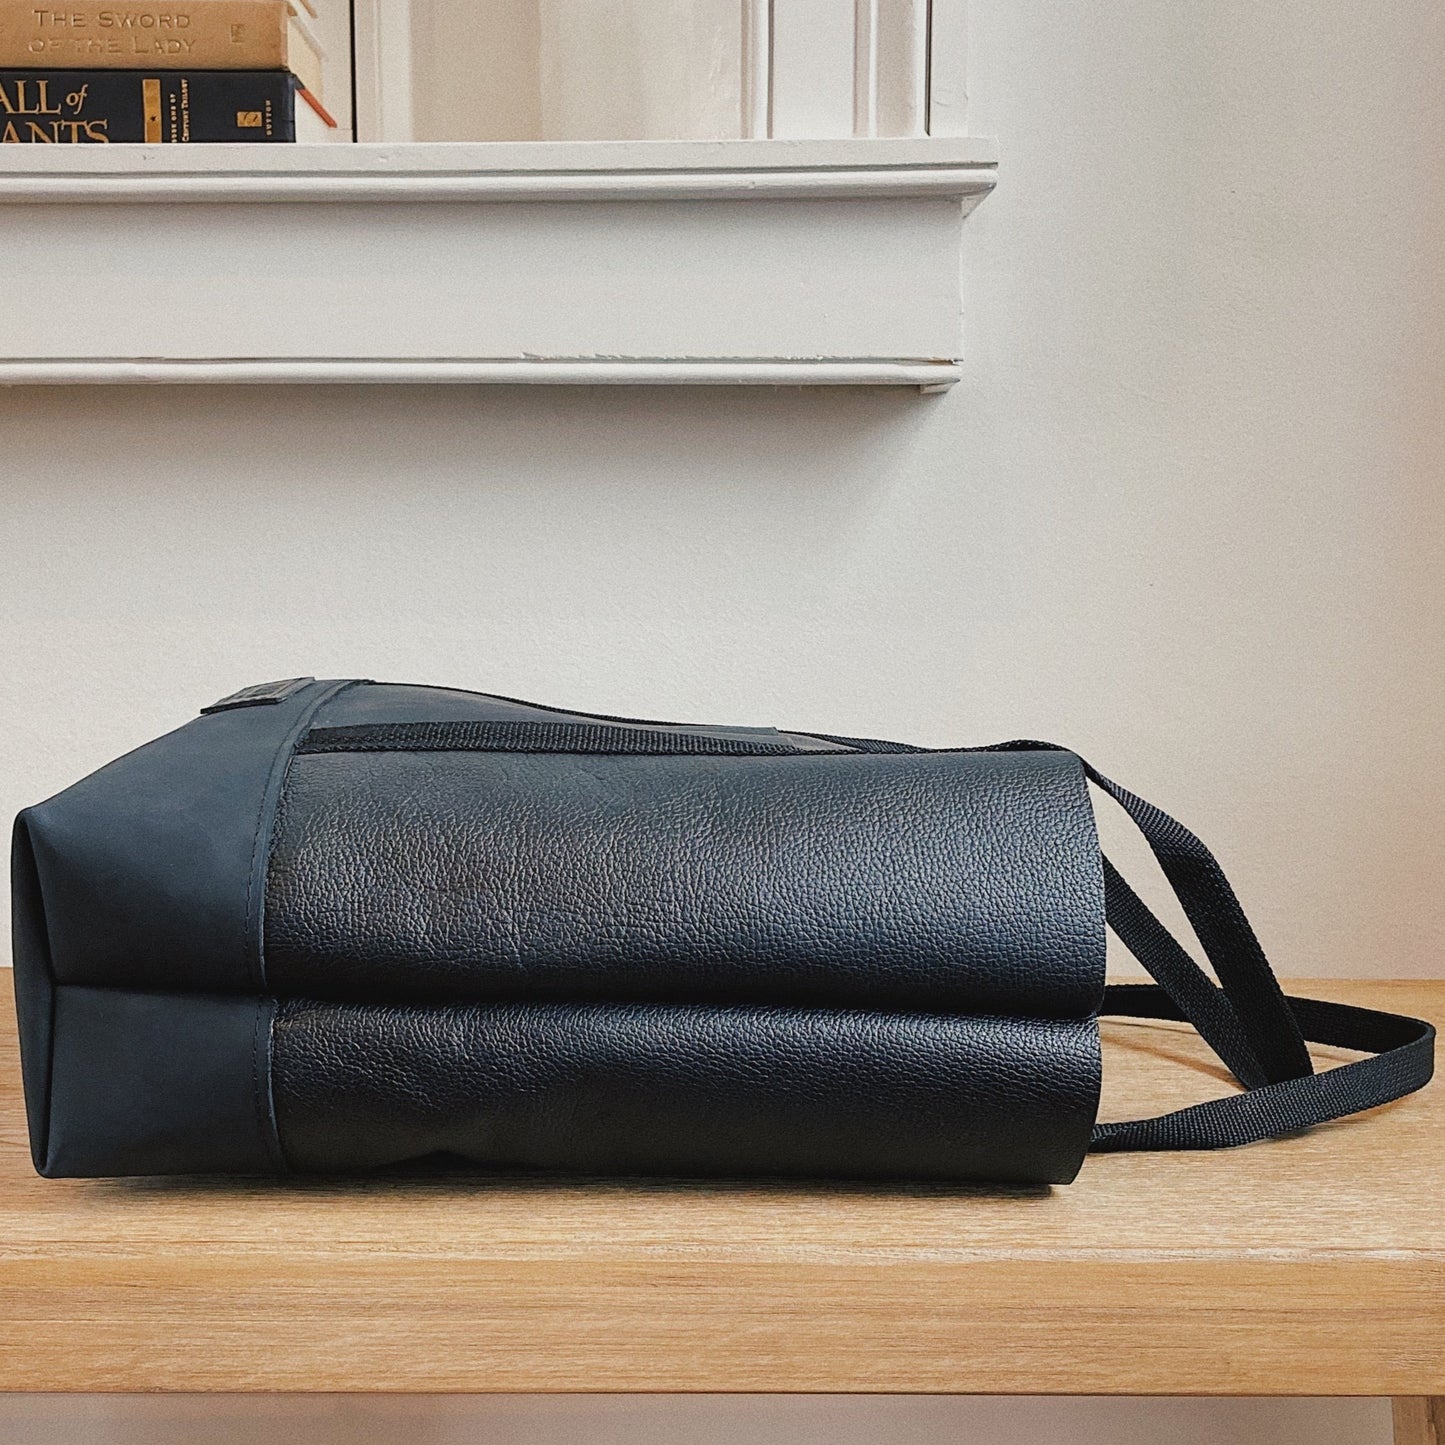 'Atelier 56' Tote Bag in BLACK